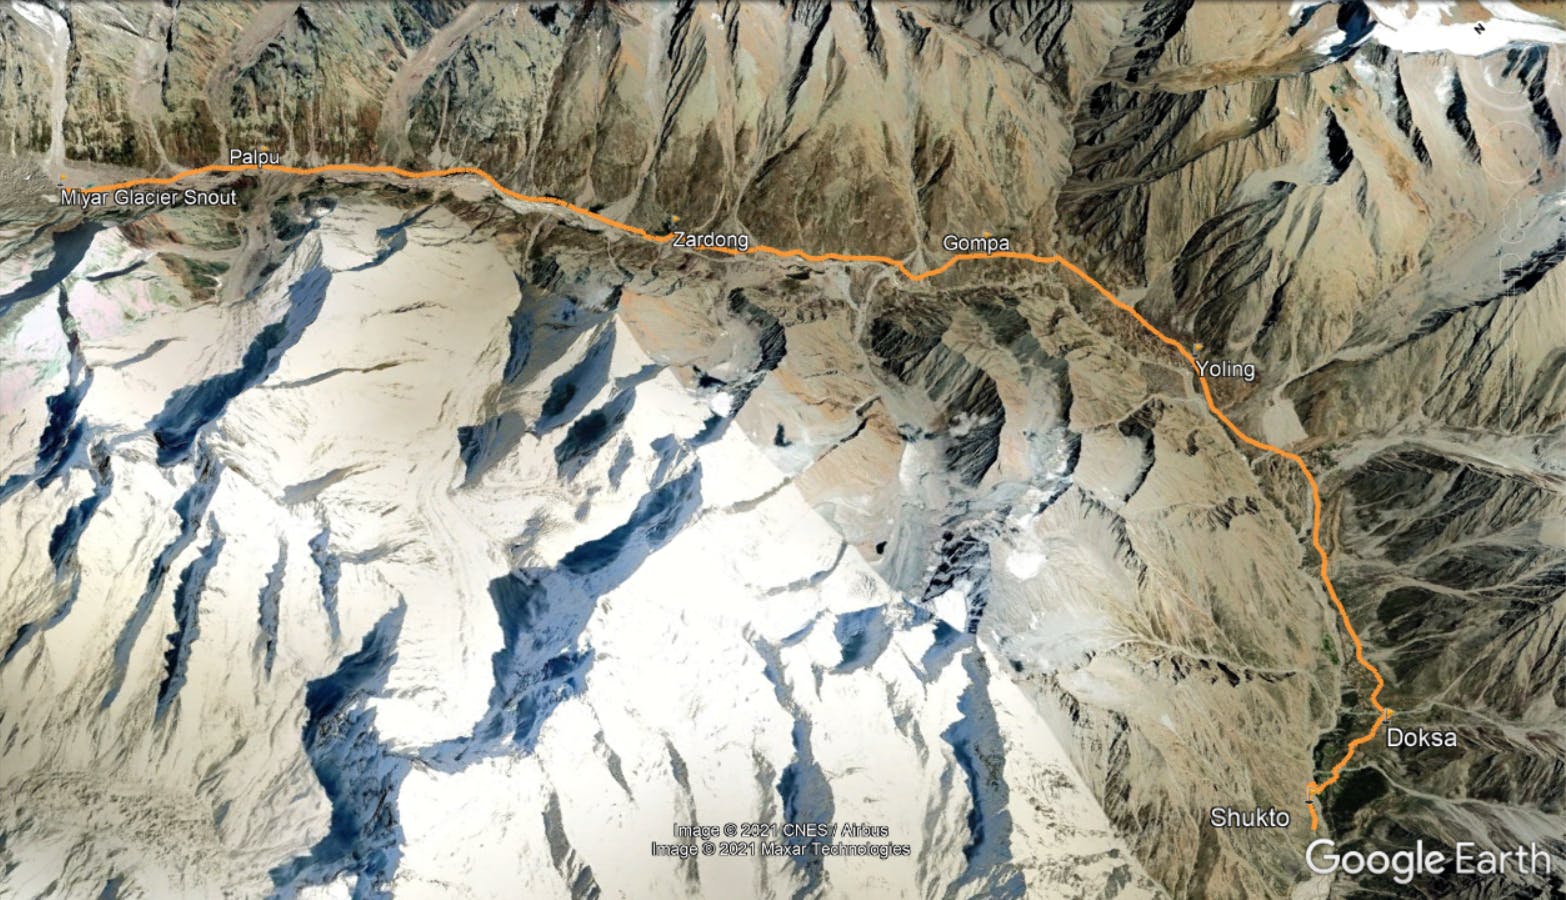 ba2dc81c 7460 48de 8114 278bdbd1356e miyar valley route map   google earth pro